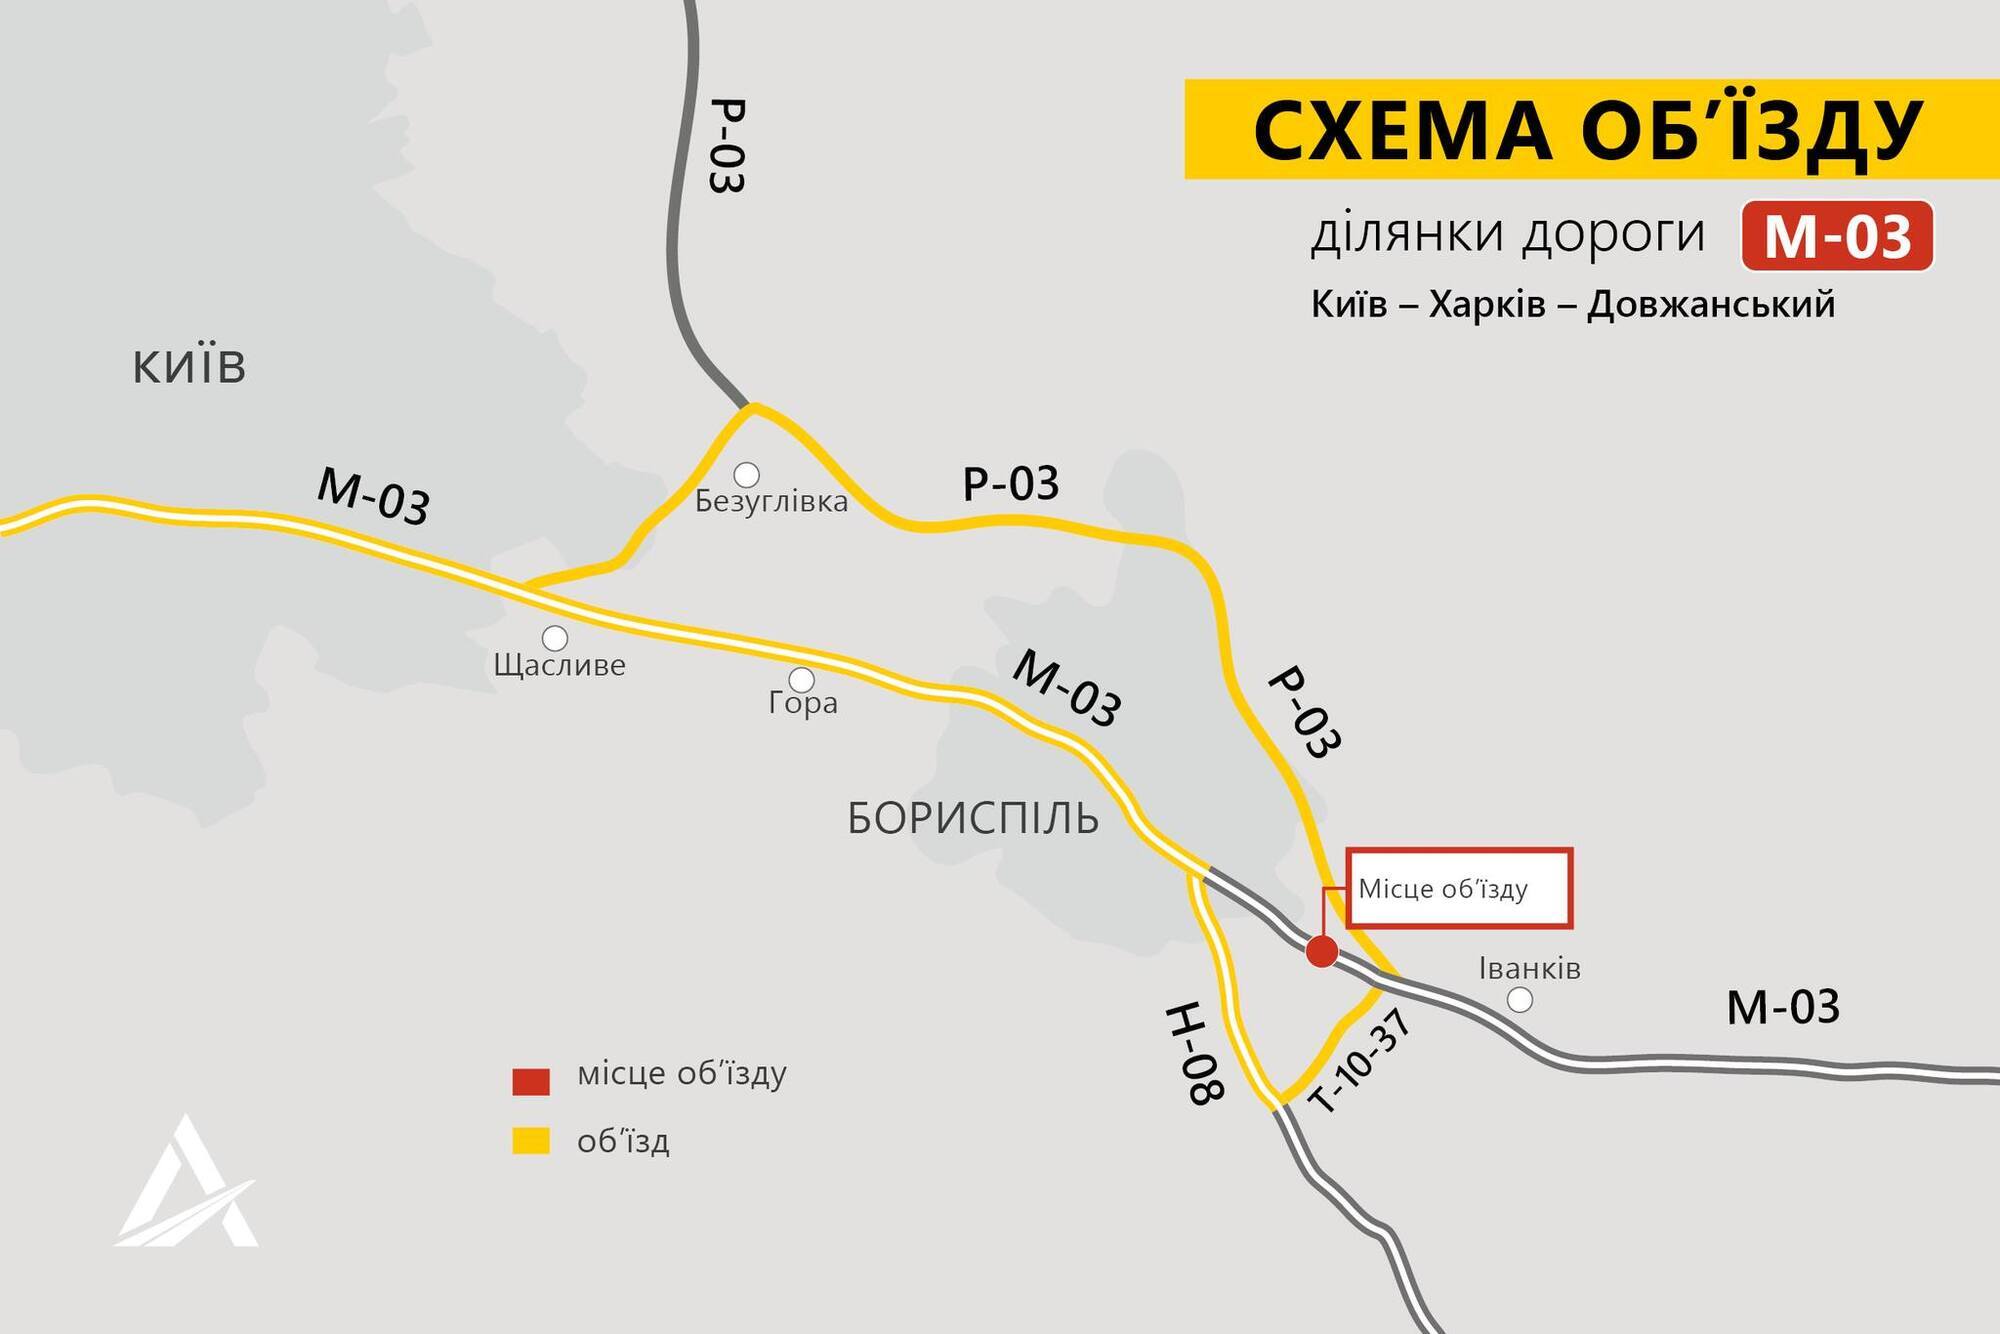 Перекрыт участок трассы М-03 за городом Борисполь.